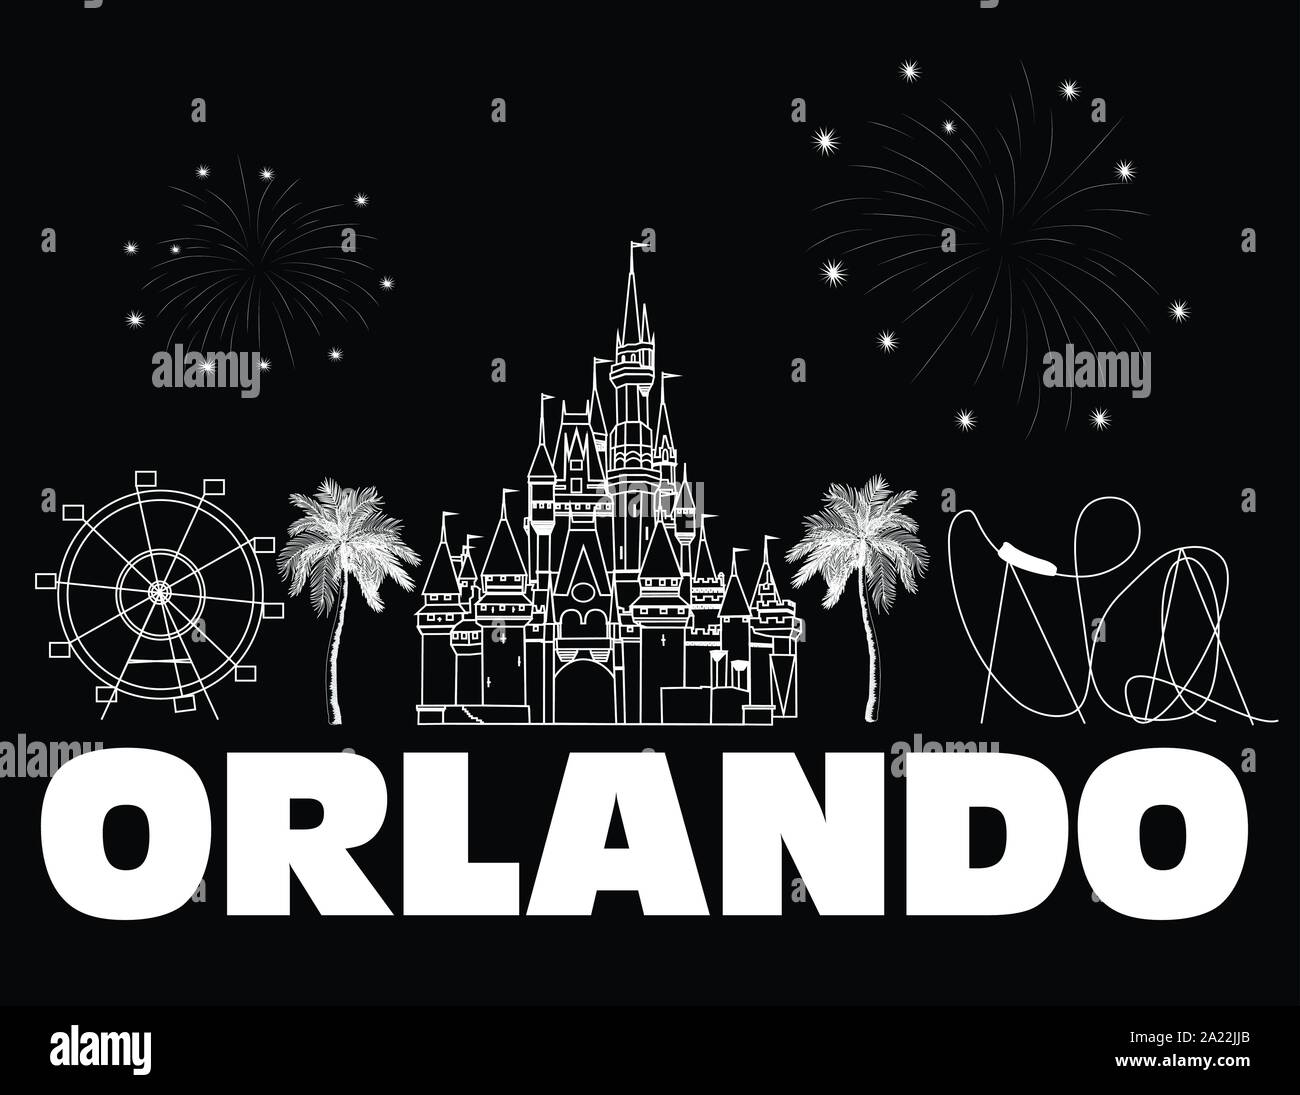 Orlando, weisser Schrift auf schwarzem Hintergrund. Vektor mit Reisen Symbole und Feuerwerk. Reisen Postkarte. Stock Vektor